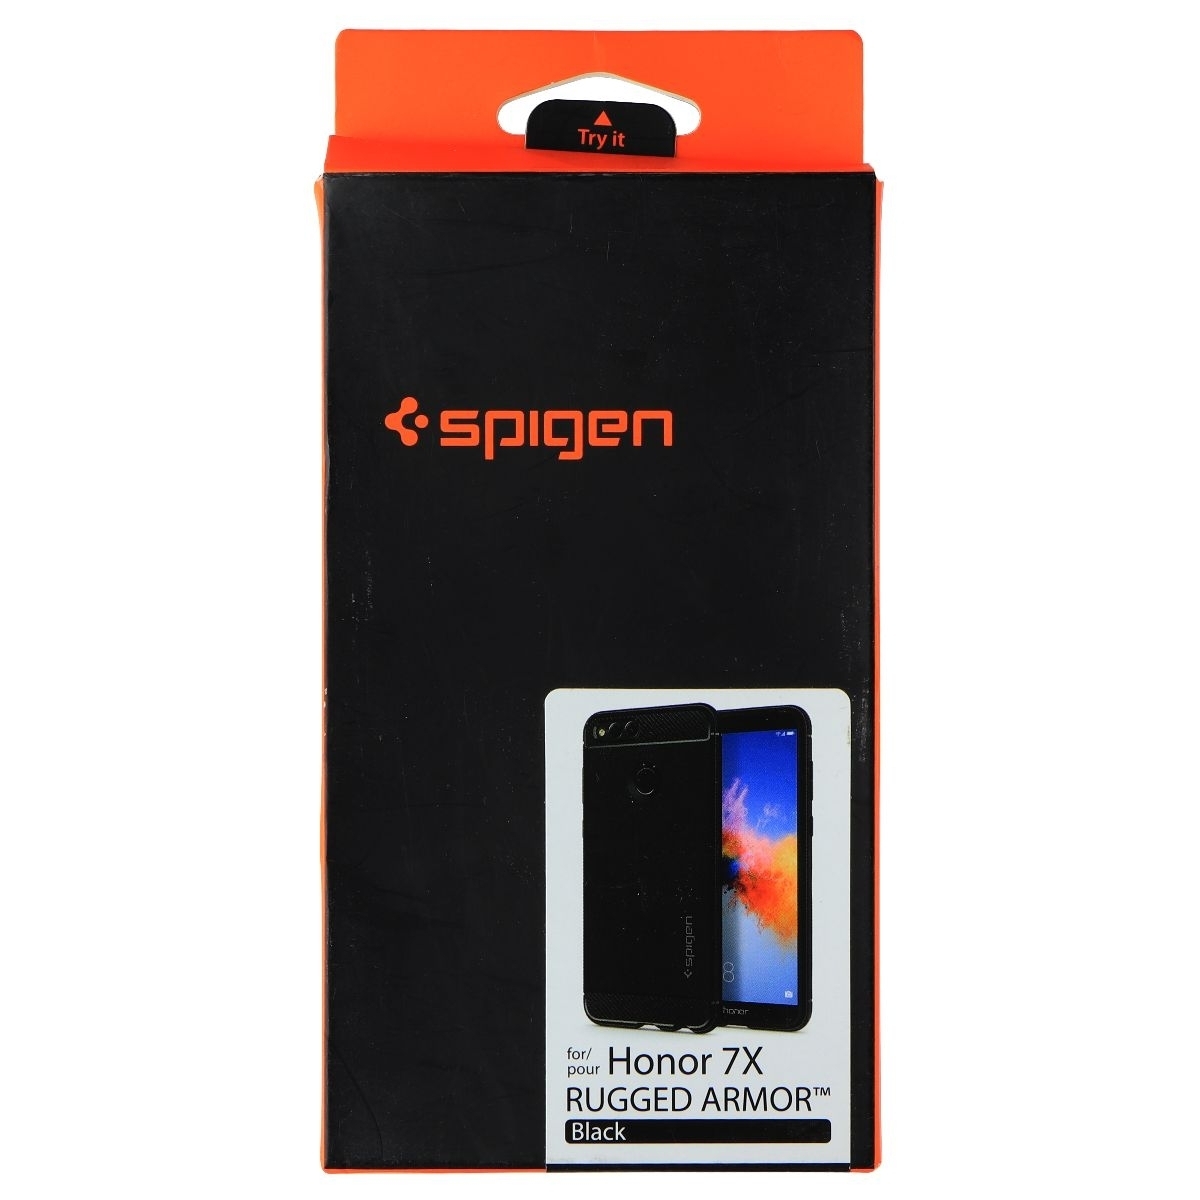 Spigen Rugged Armor Flexible Case For Honor 7X Smartphone (2017) - Black (Refurbished)